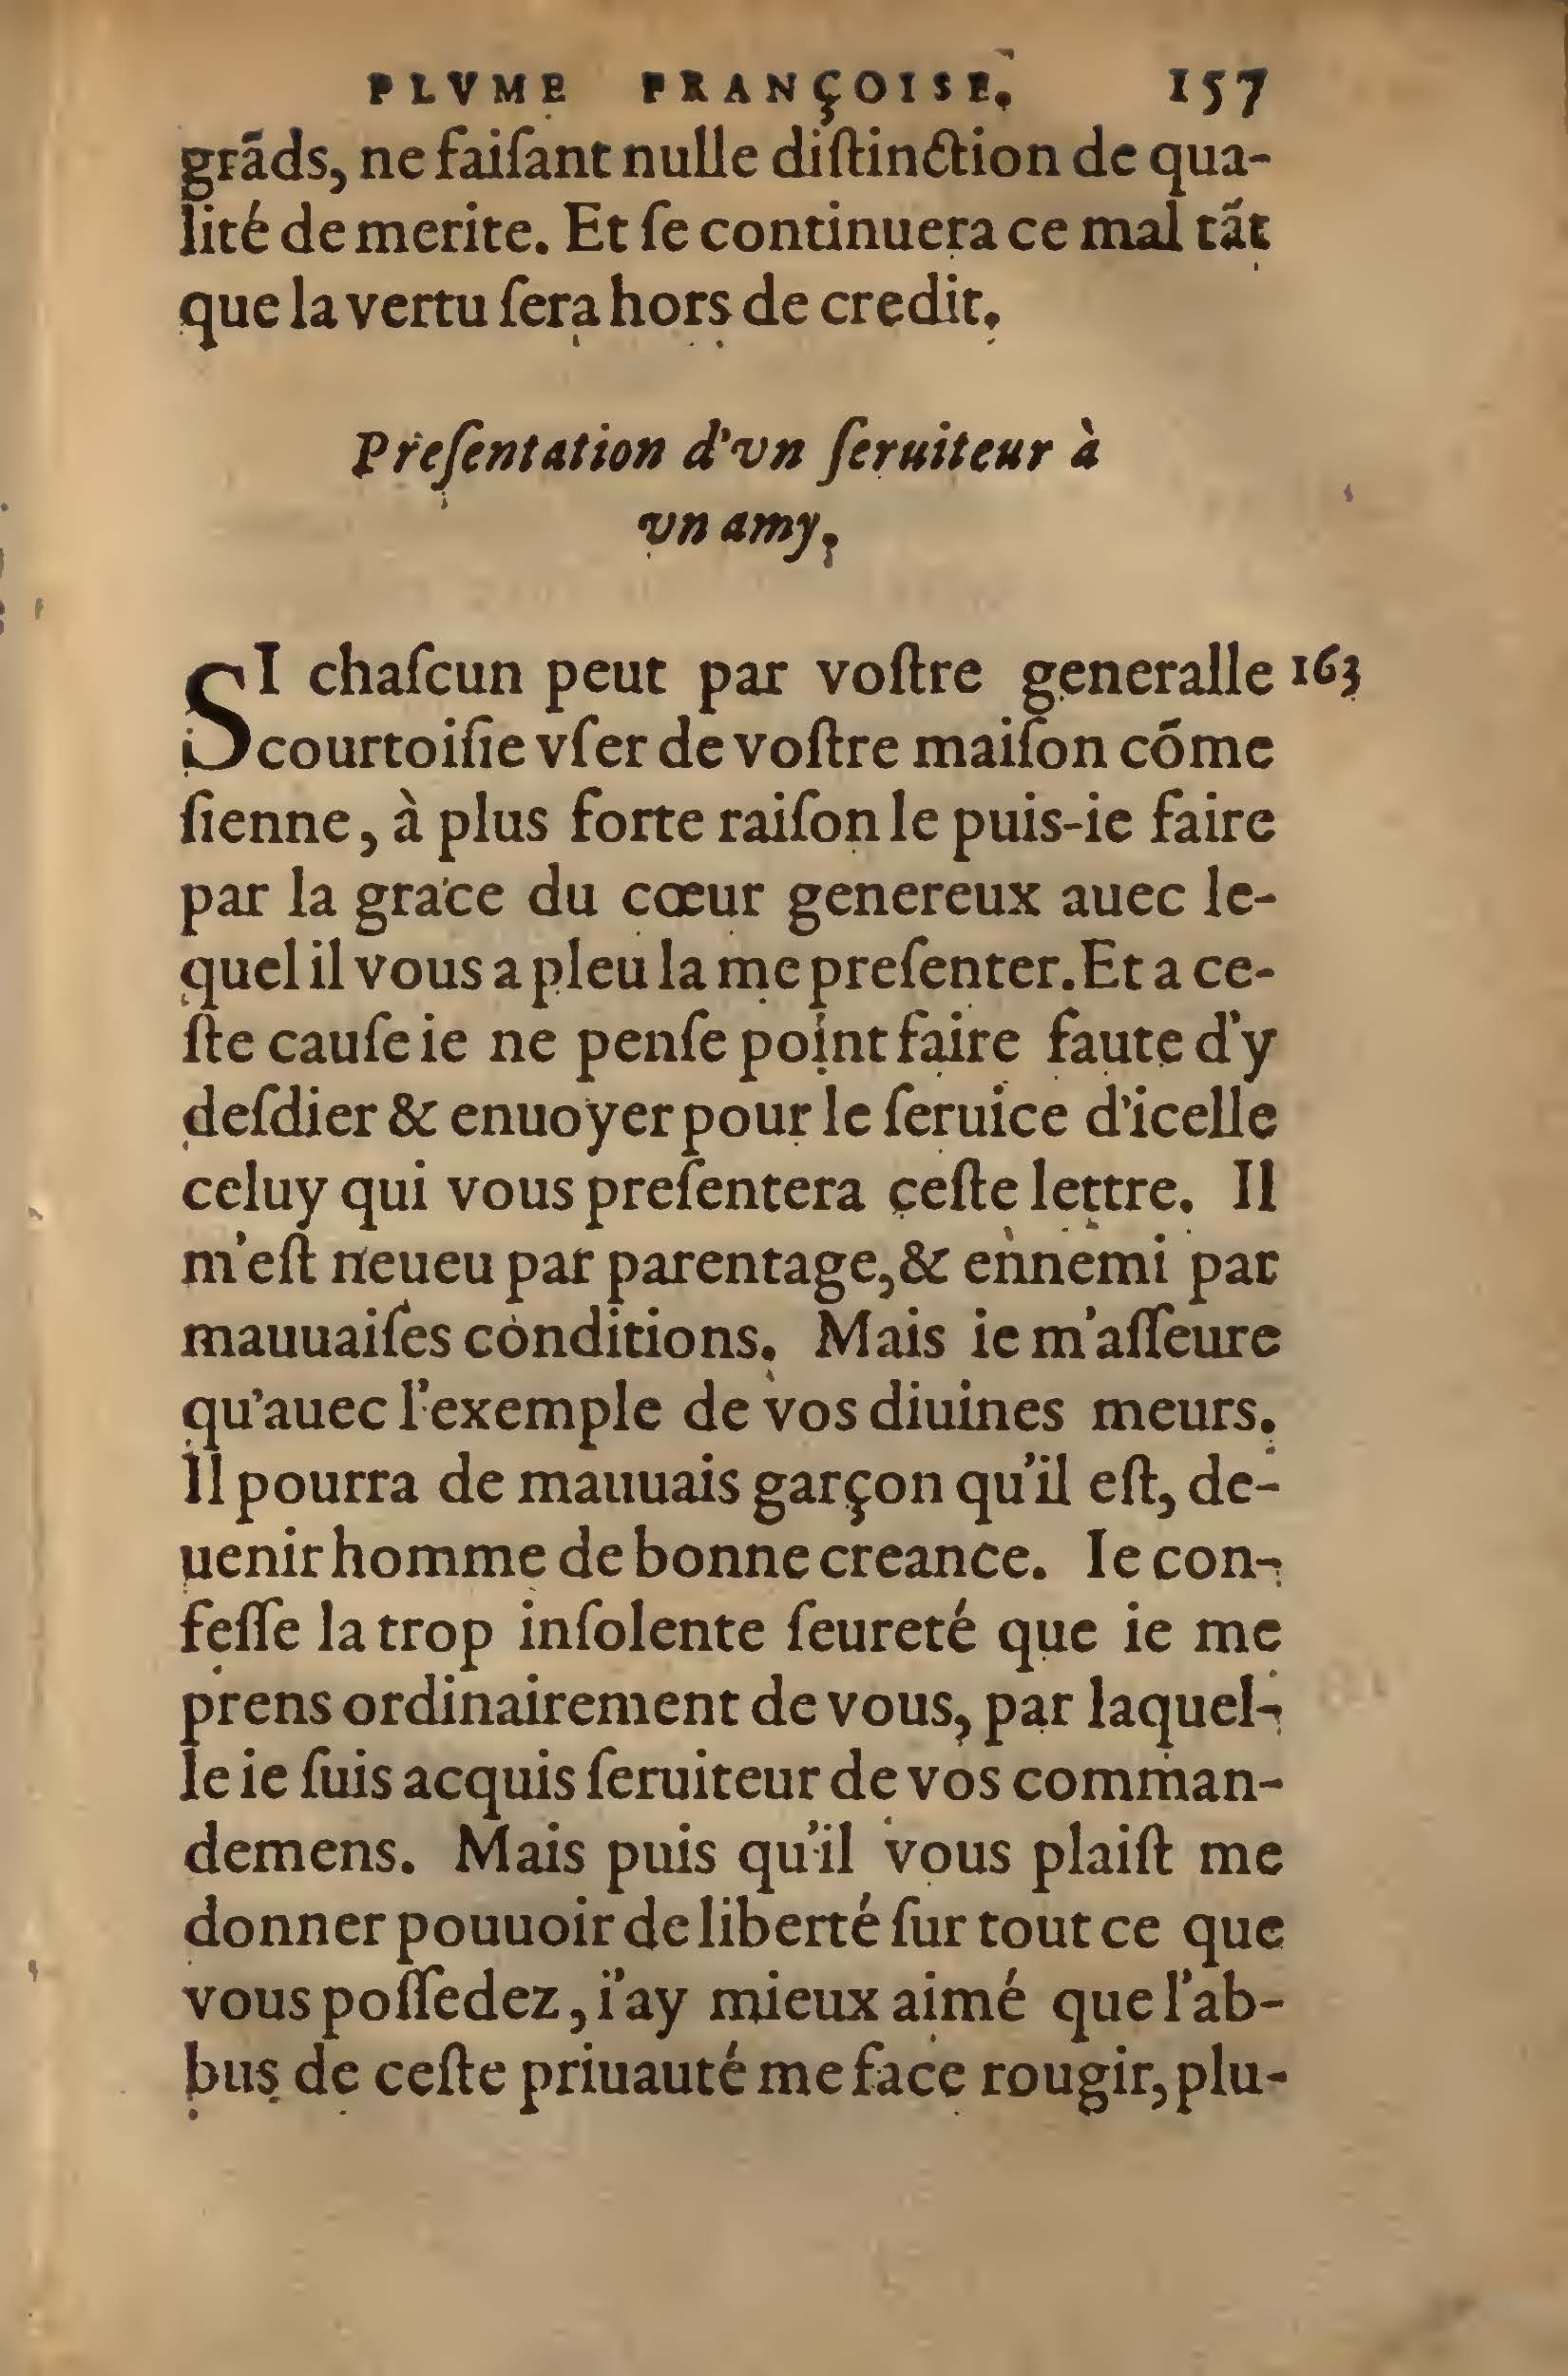 1572 Lucas Breyer Finances et Trésor de la plume française BNC Rome_Page_199.jpg